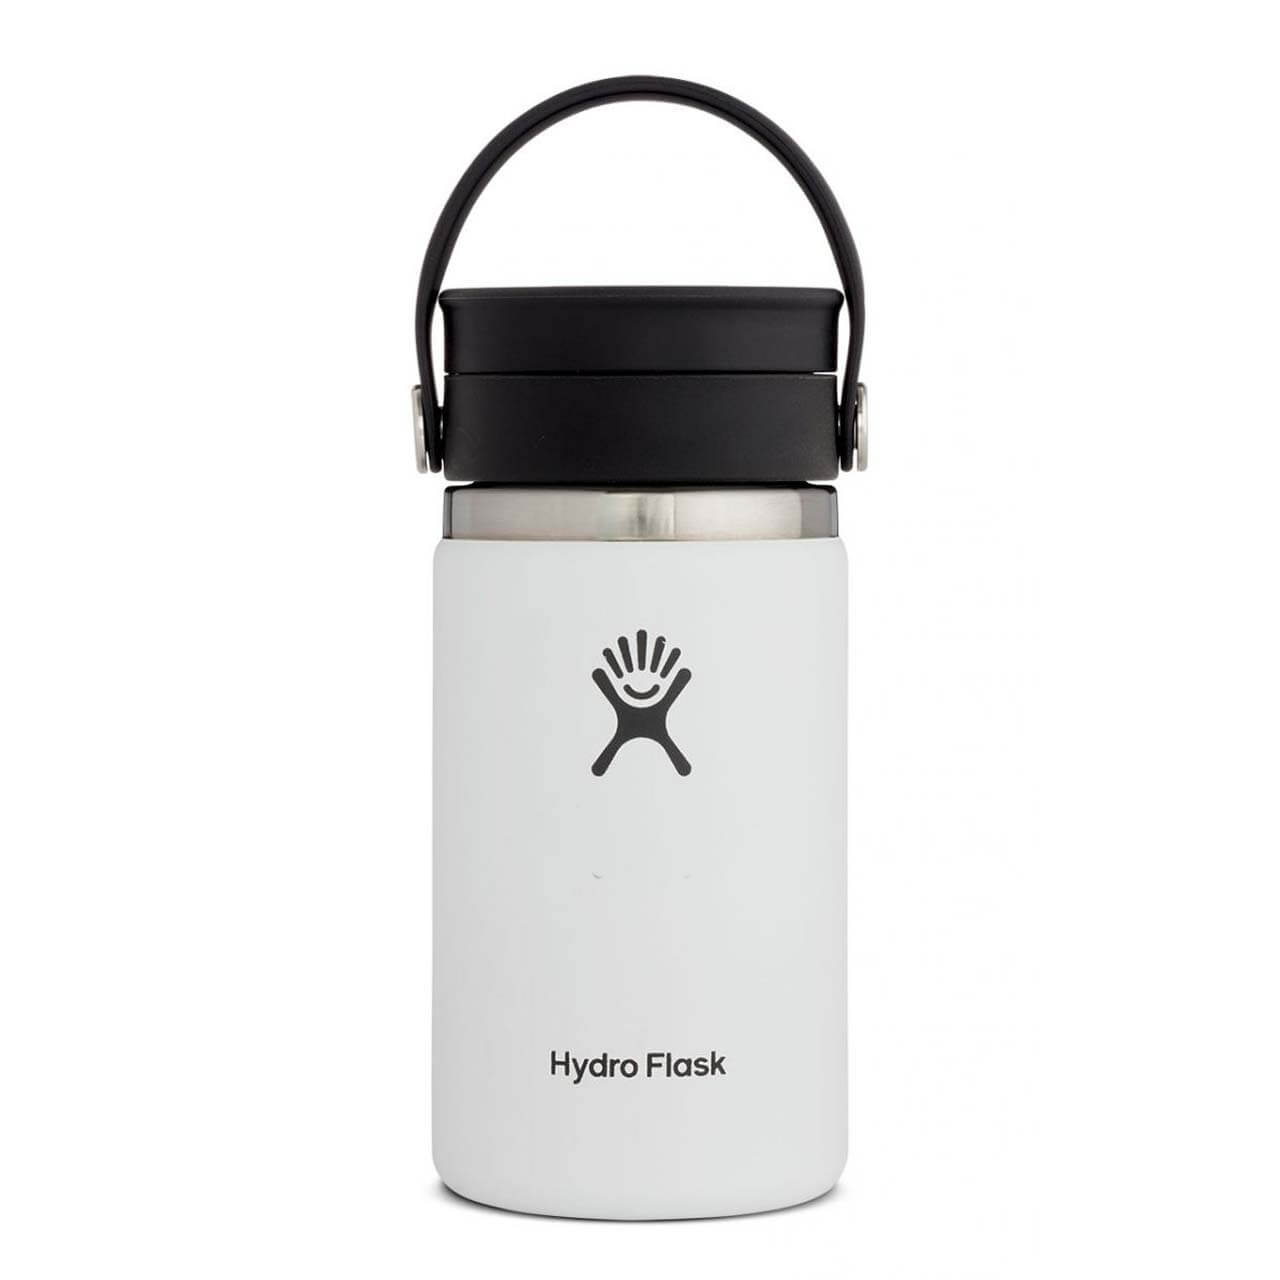 Hydro Flask Kaffeebecher - White, 12 oz von Hydro Flask}